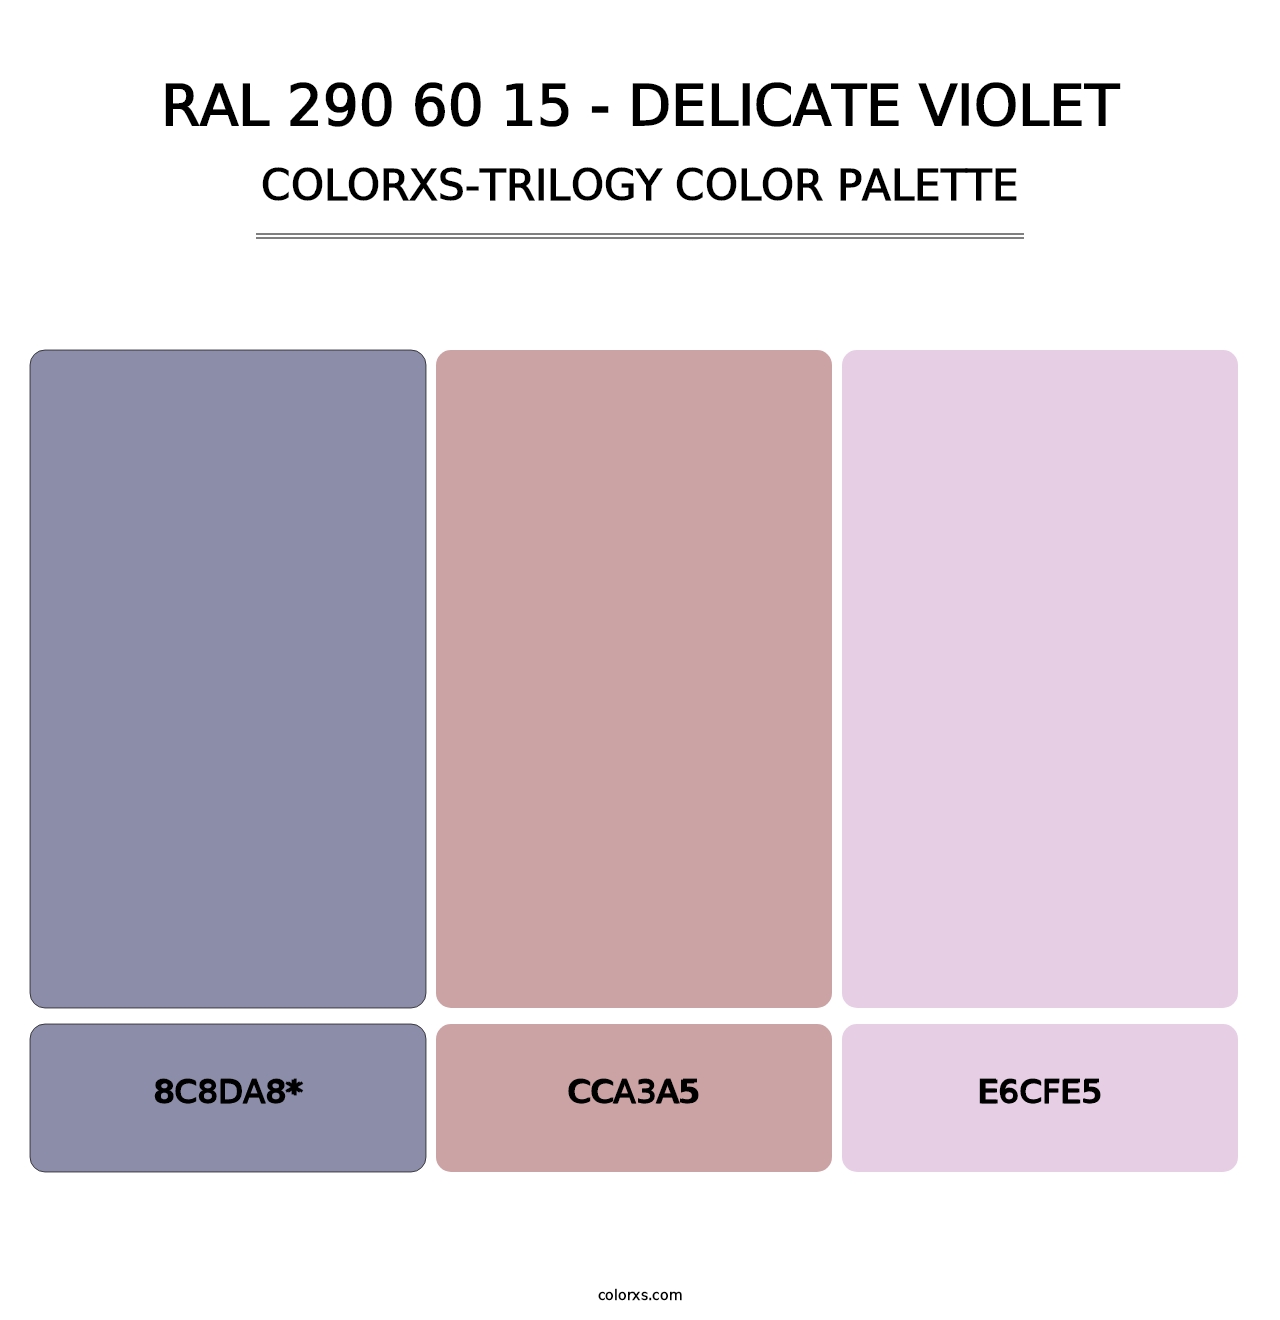 RAL 290 60 15 - Delicate Violet - Colorxs Trilogy Palette